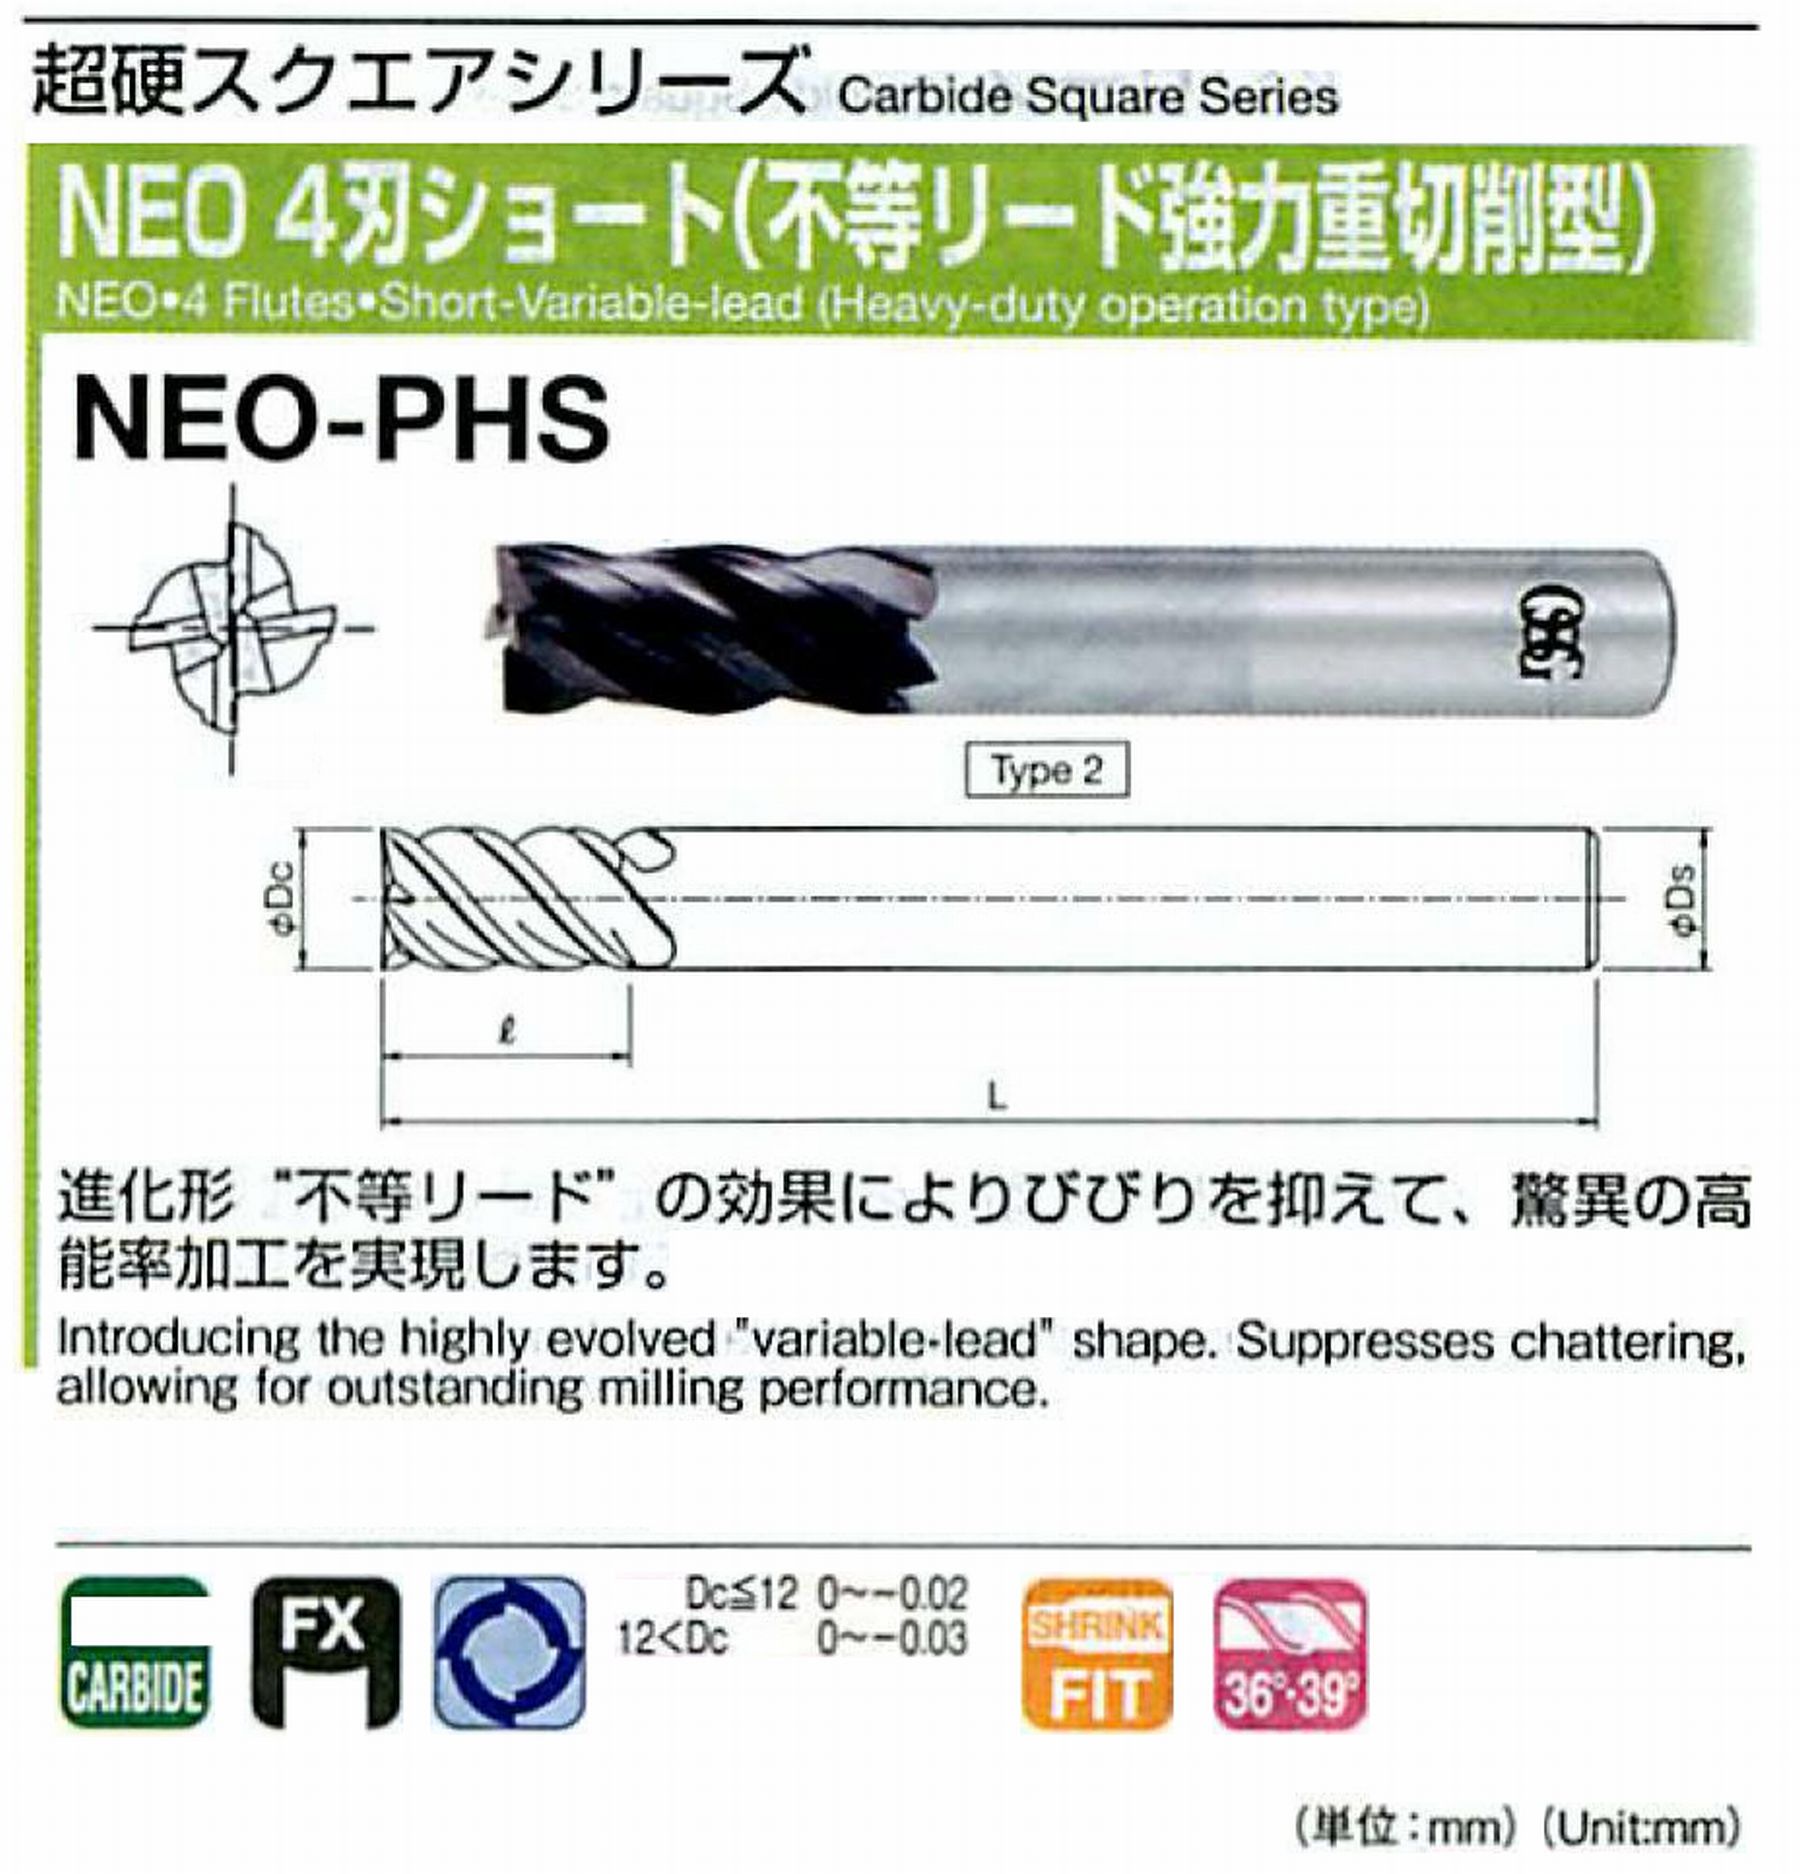 オーエスジー/OSG NEO 4刃ショート(不等リード強力重切削型) NEO-PHS 外径25 全長120 刃長50 シャンク径25mm 形状2